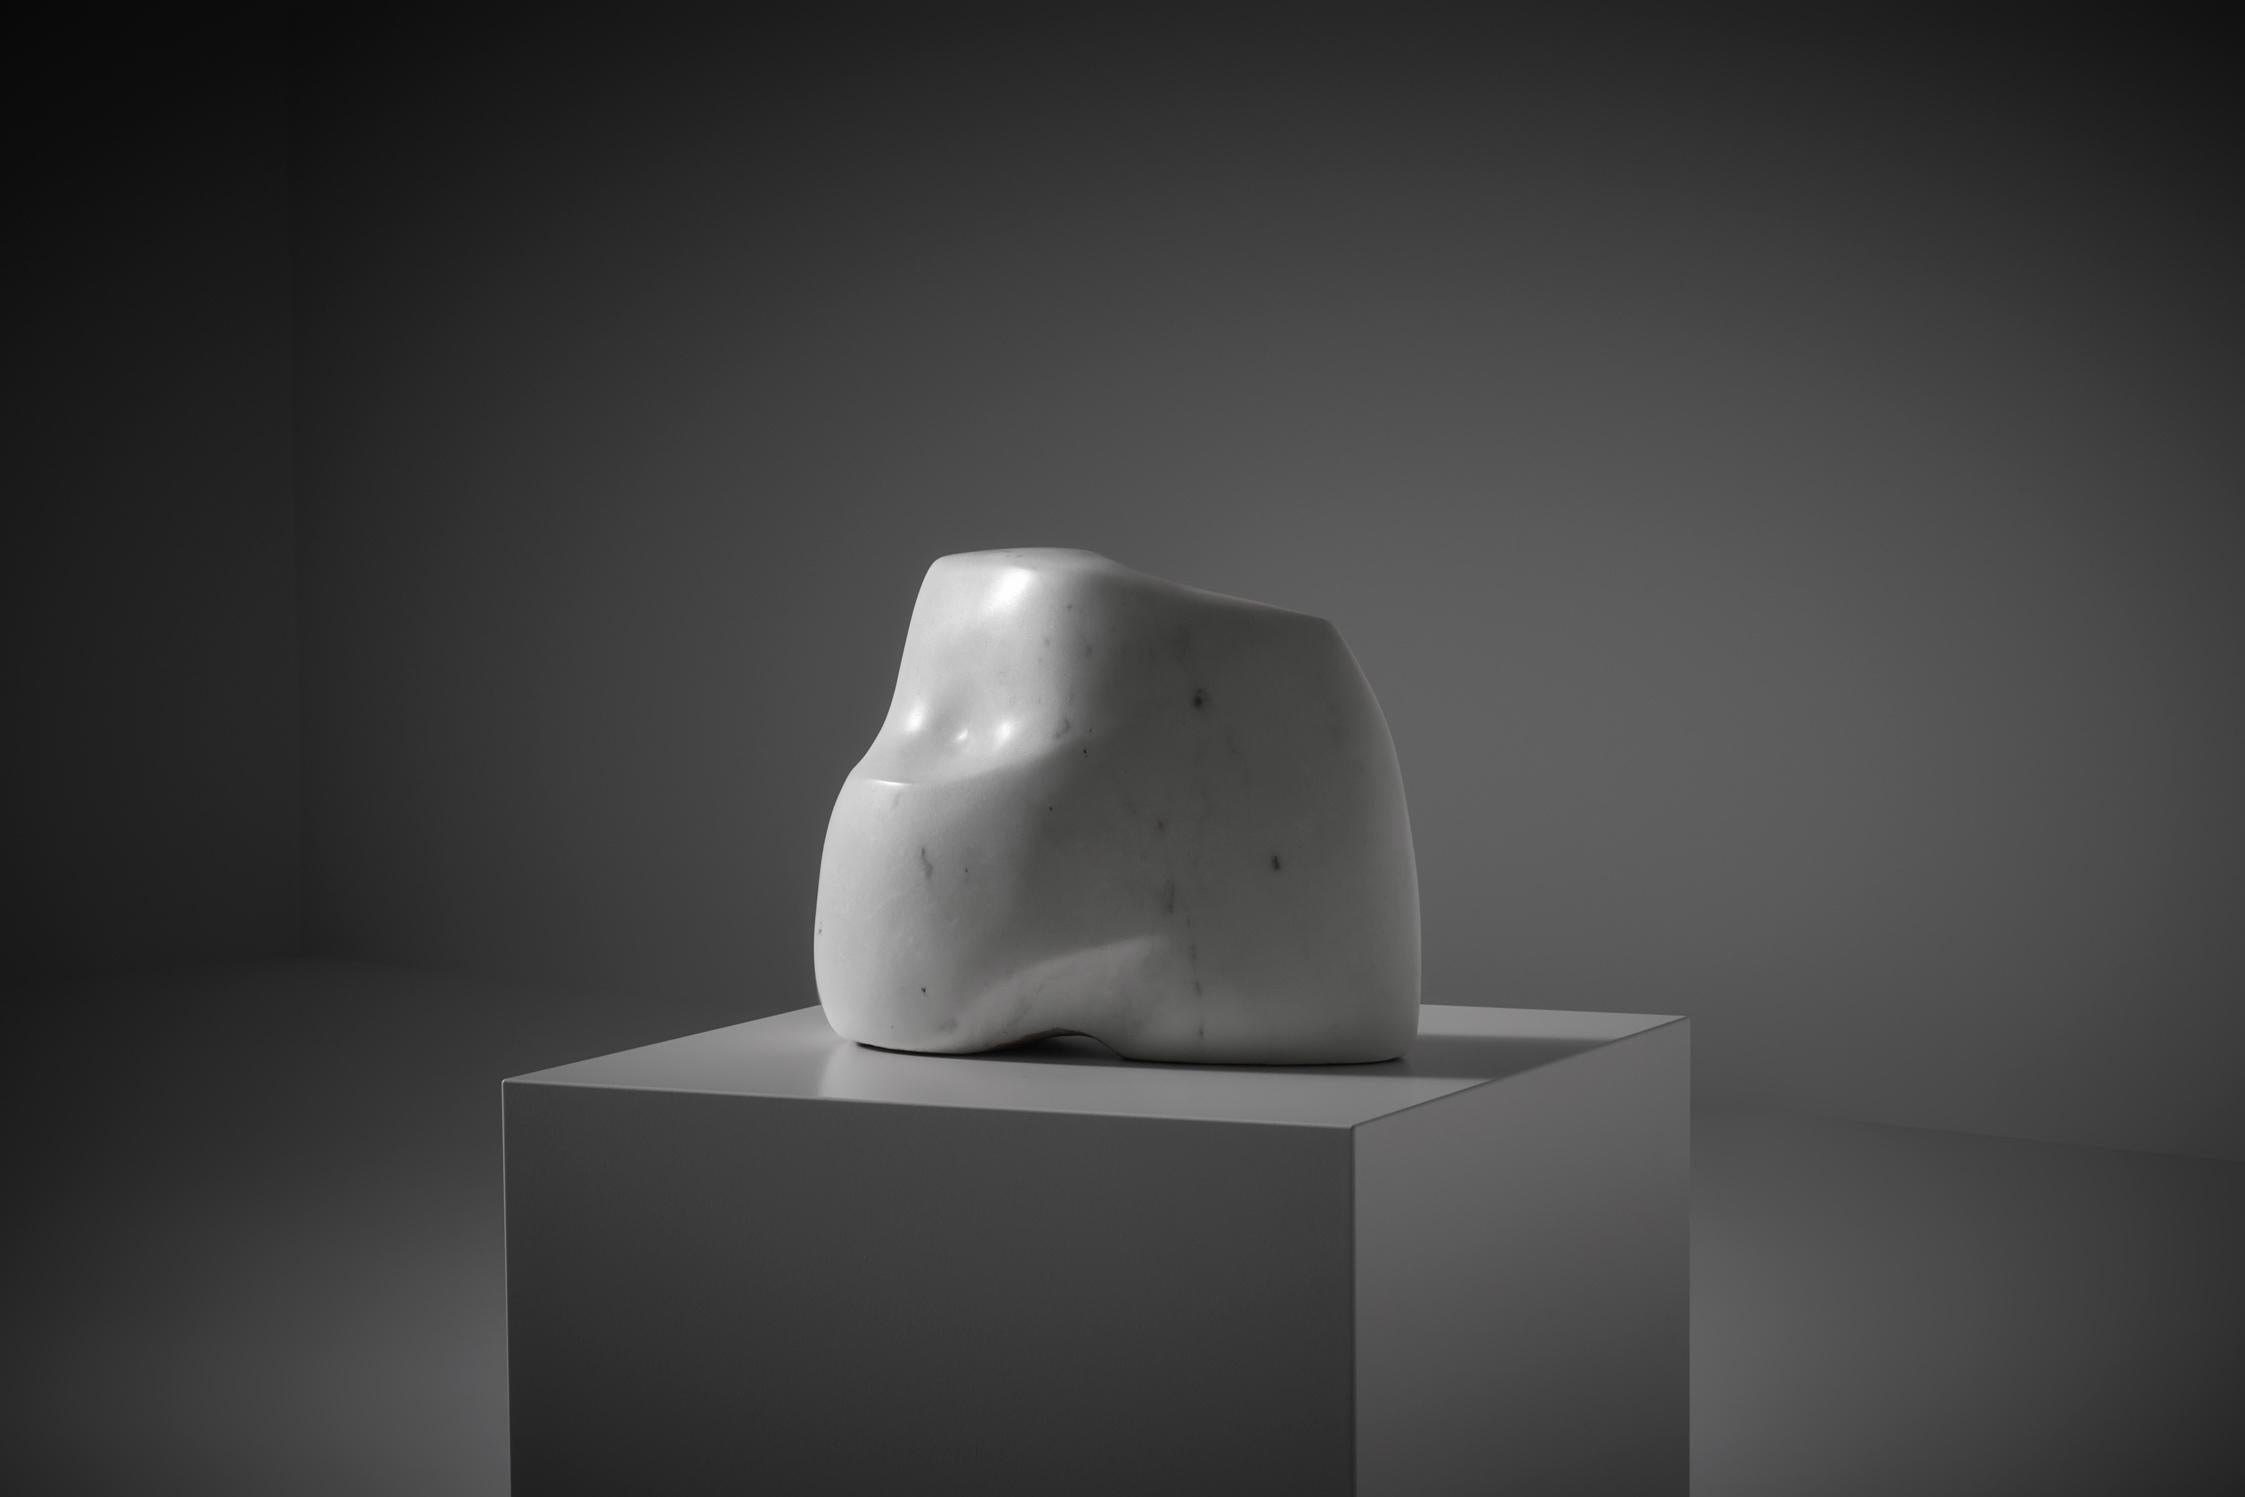 Abstrakte Skulptur aus Carrara-Marmor von Willy Anthoons (Belgien 1911 - Paris 1982), Frankreich 1951. Schöne stilisierte fließende Formen, die eine ruhige und friedliche Skulptur ergeben. Die Skulptur findet sich im Buch von Anthoons wieder, wo er